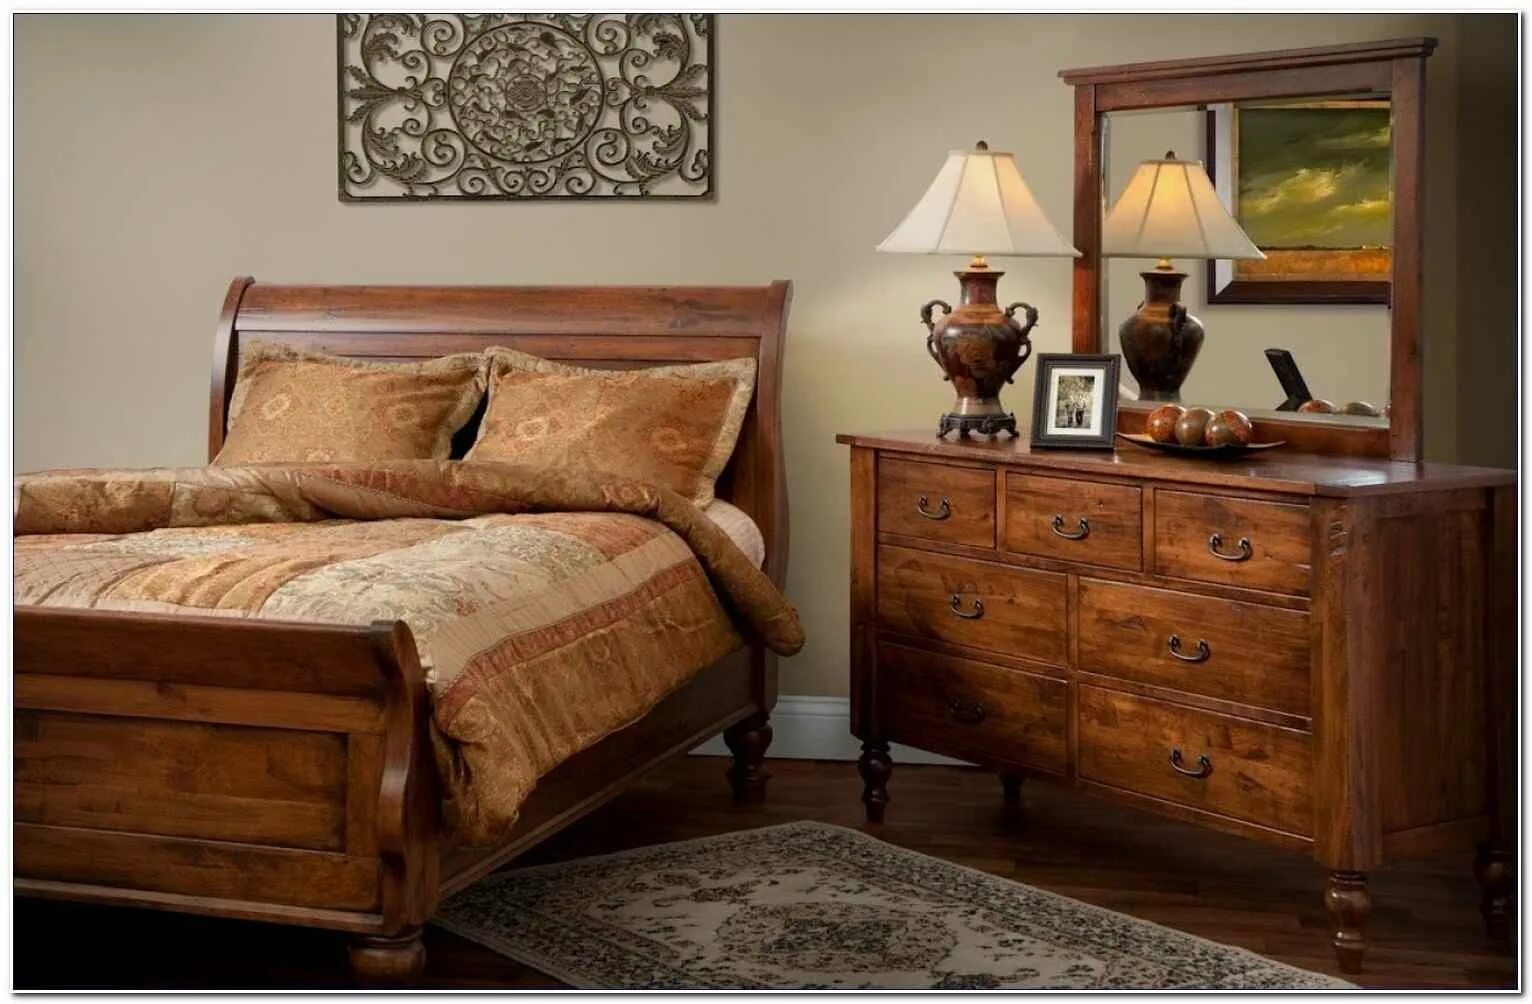 Красивая деревянная мебель. Спальня массив дерева. Современная деревянная мебель. Деревянная мебель в интерьере. Wooden мебель